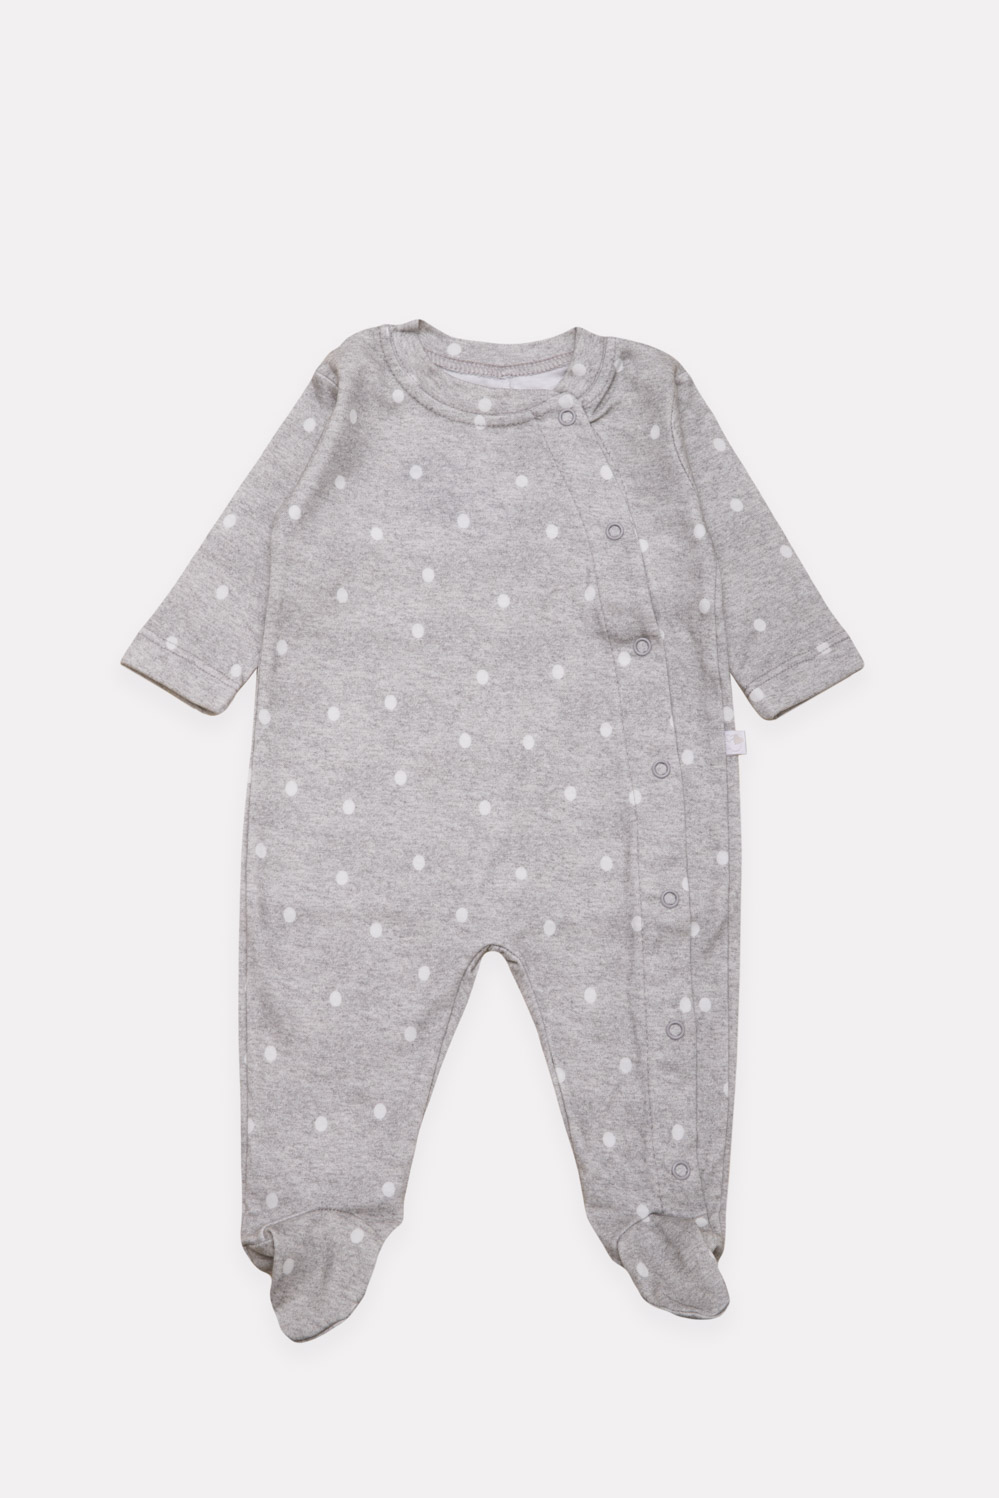 Pijama Bebe Lunares